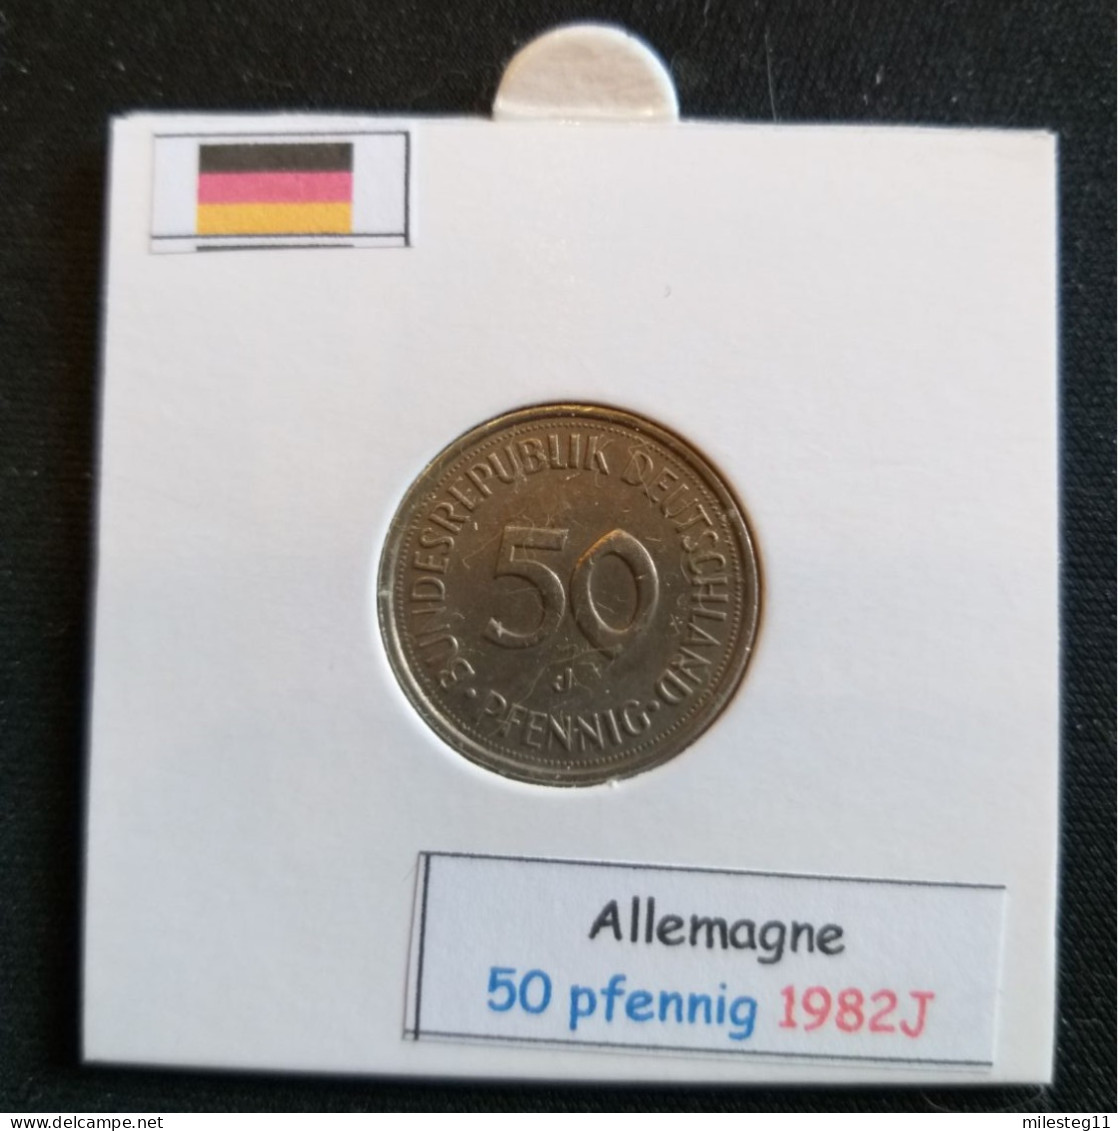 Allemagne 50 Pfennig 1982J - 50 Pfennig